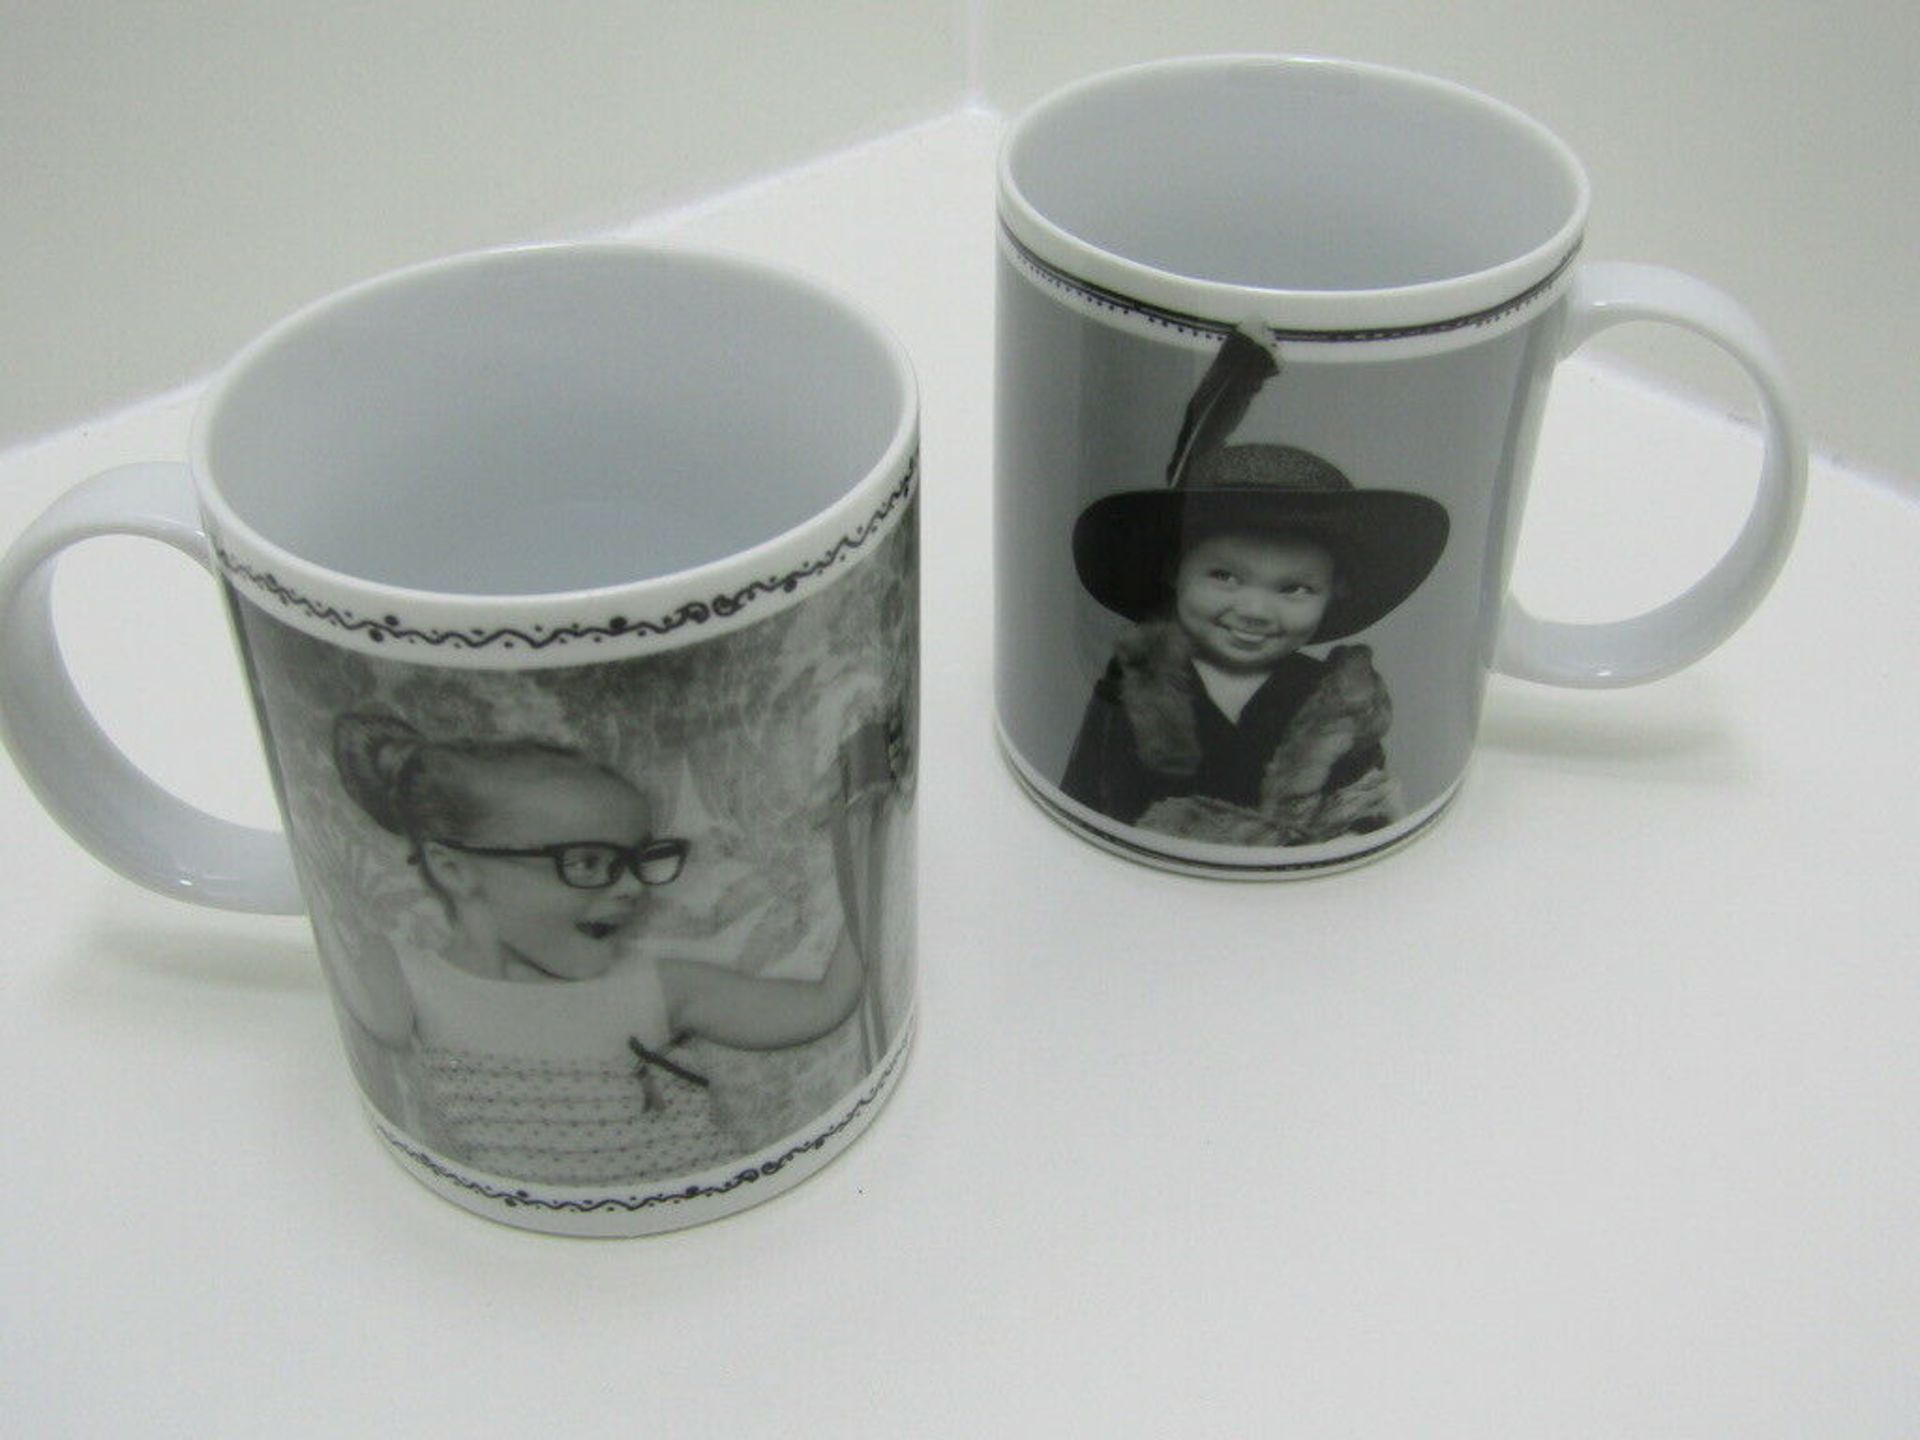 Set of 2 Novelty Mugs. Gift Boxed. Coffe Mugs. Large 11oz Volume. - Image 2 of 6